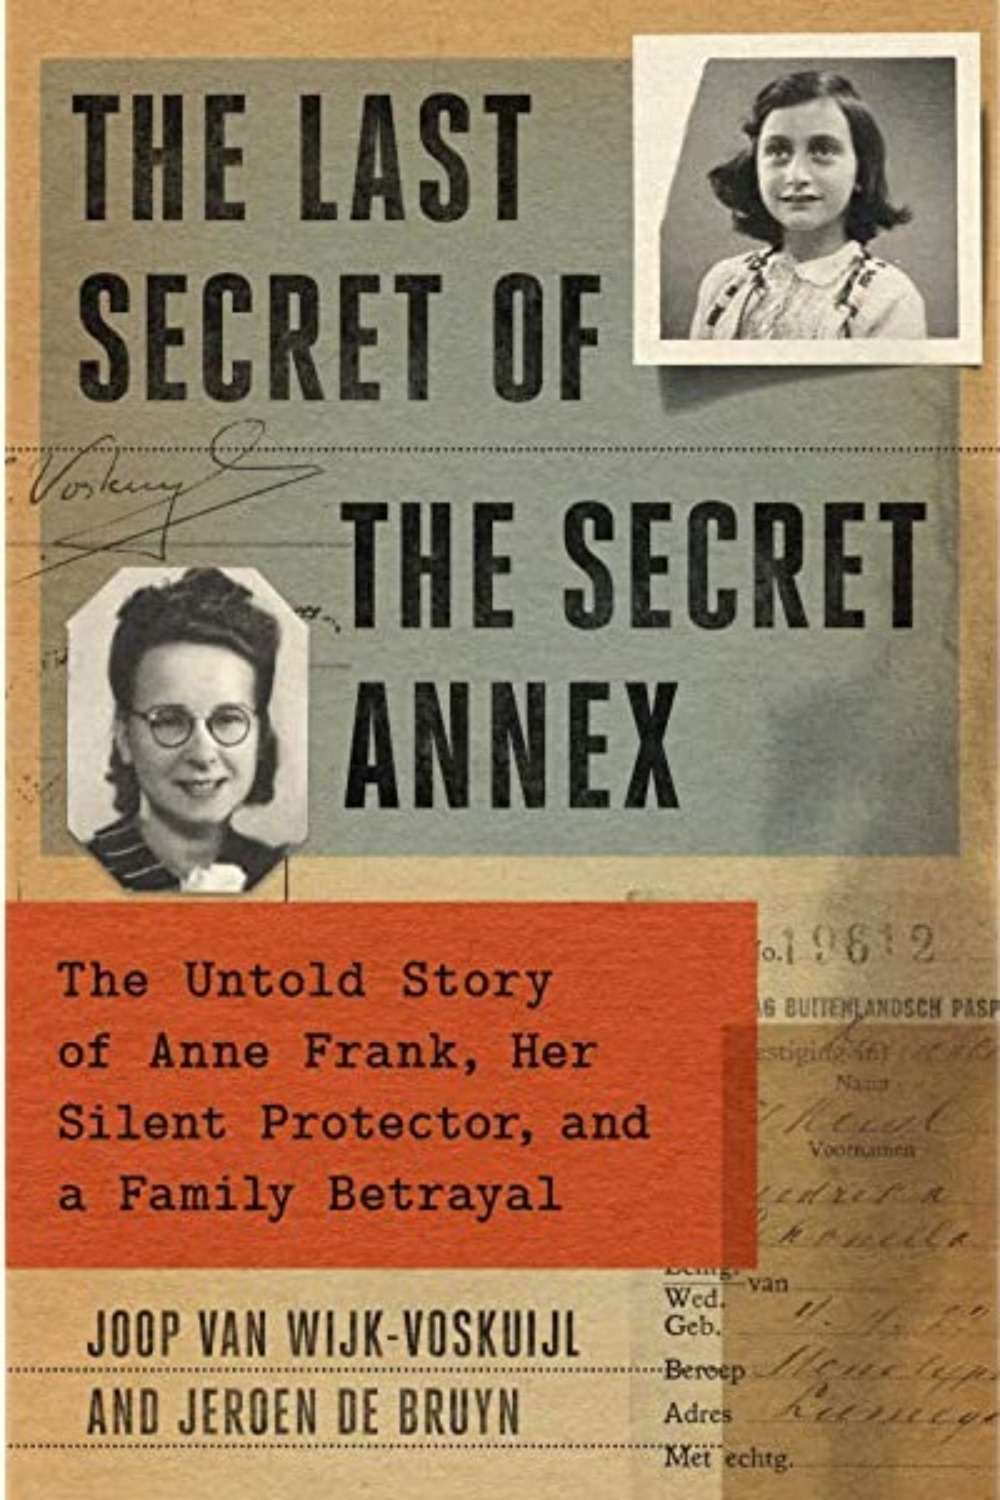 The Last Secret of the Secret Annex by Joop van Wijk-Voskuijl and Jeroen De Bruyn